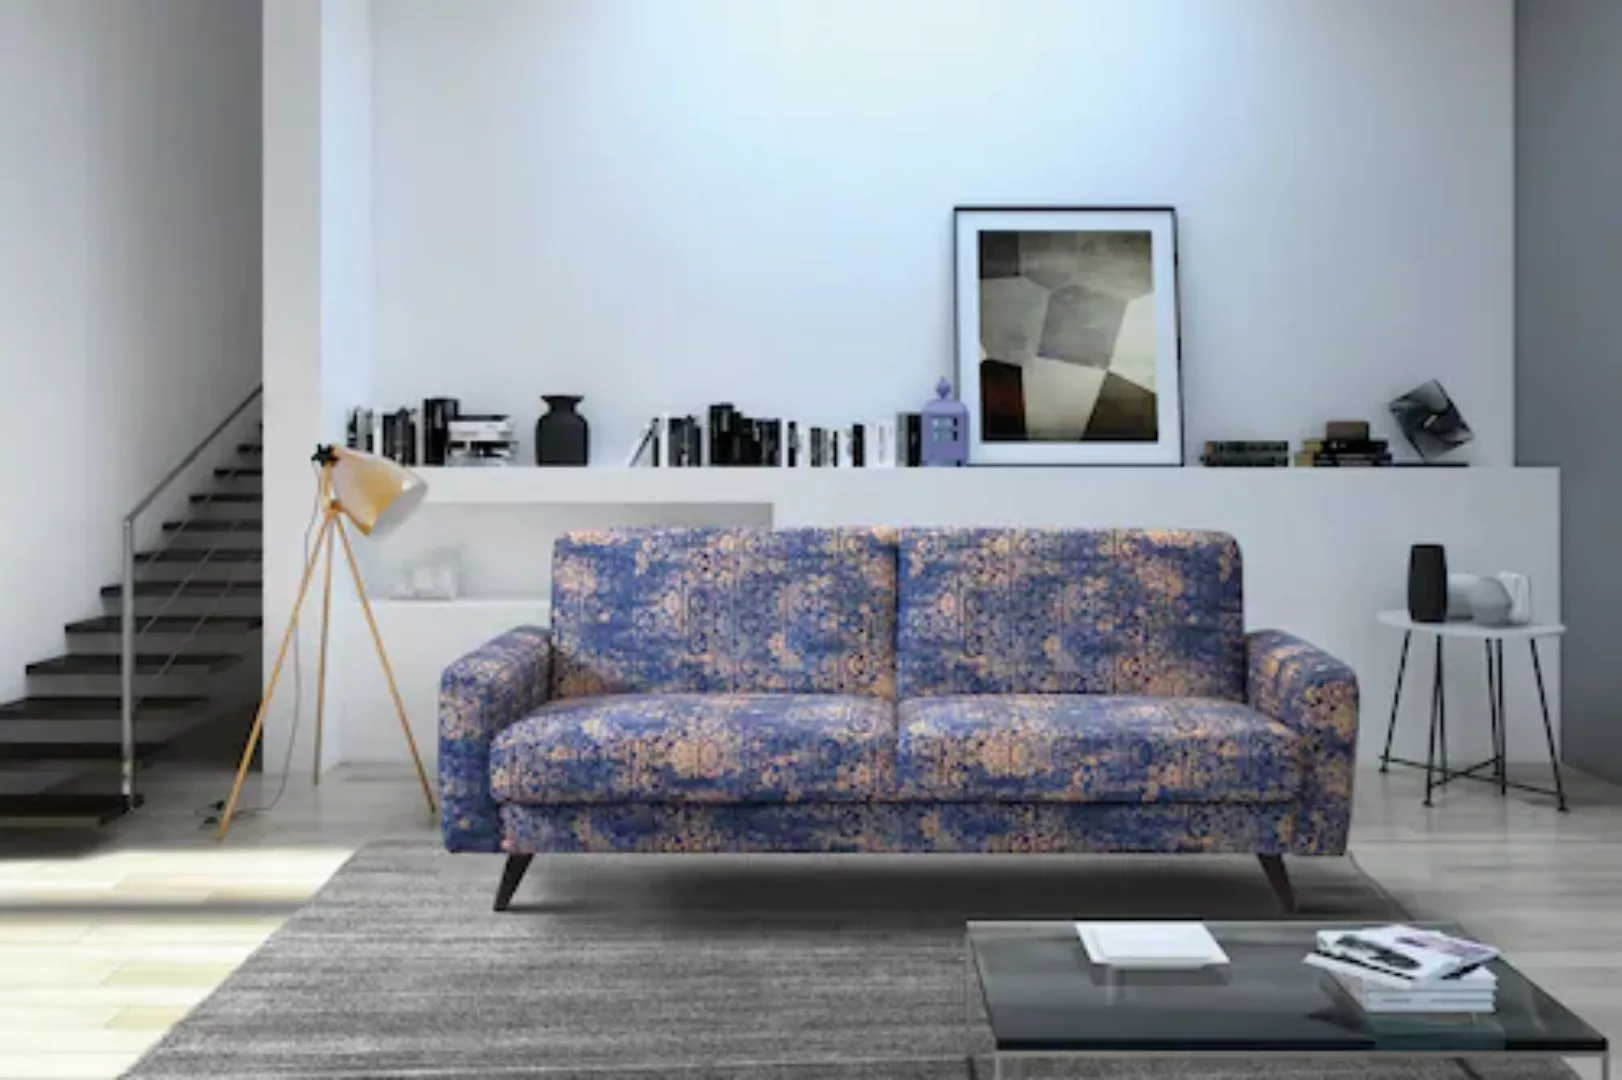 exxpo - sofa fashion 3-Sitzer, mit Schlaffunktion, Bettkasten und Holzfüße günstig online kaufen